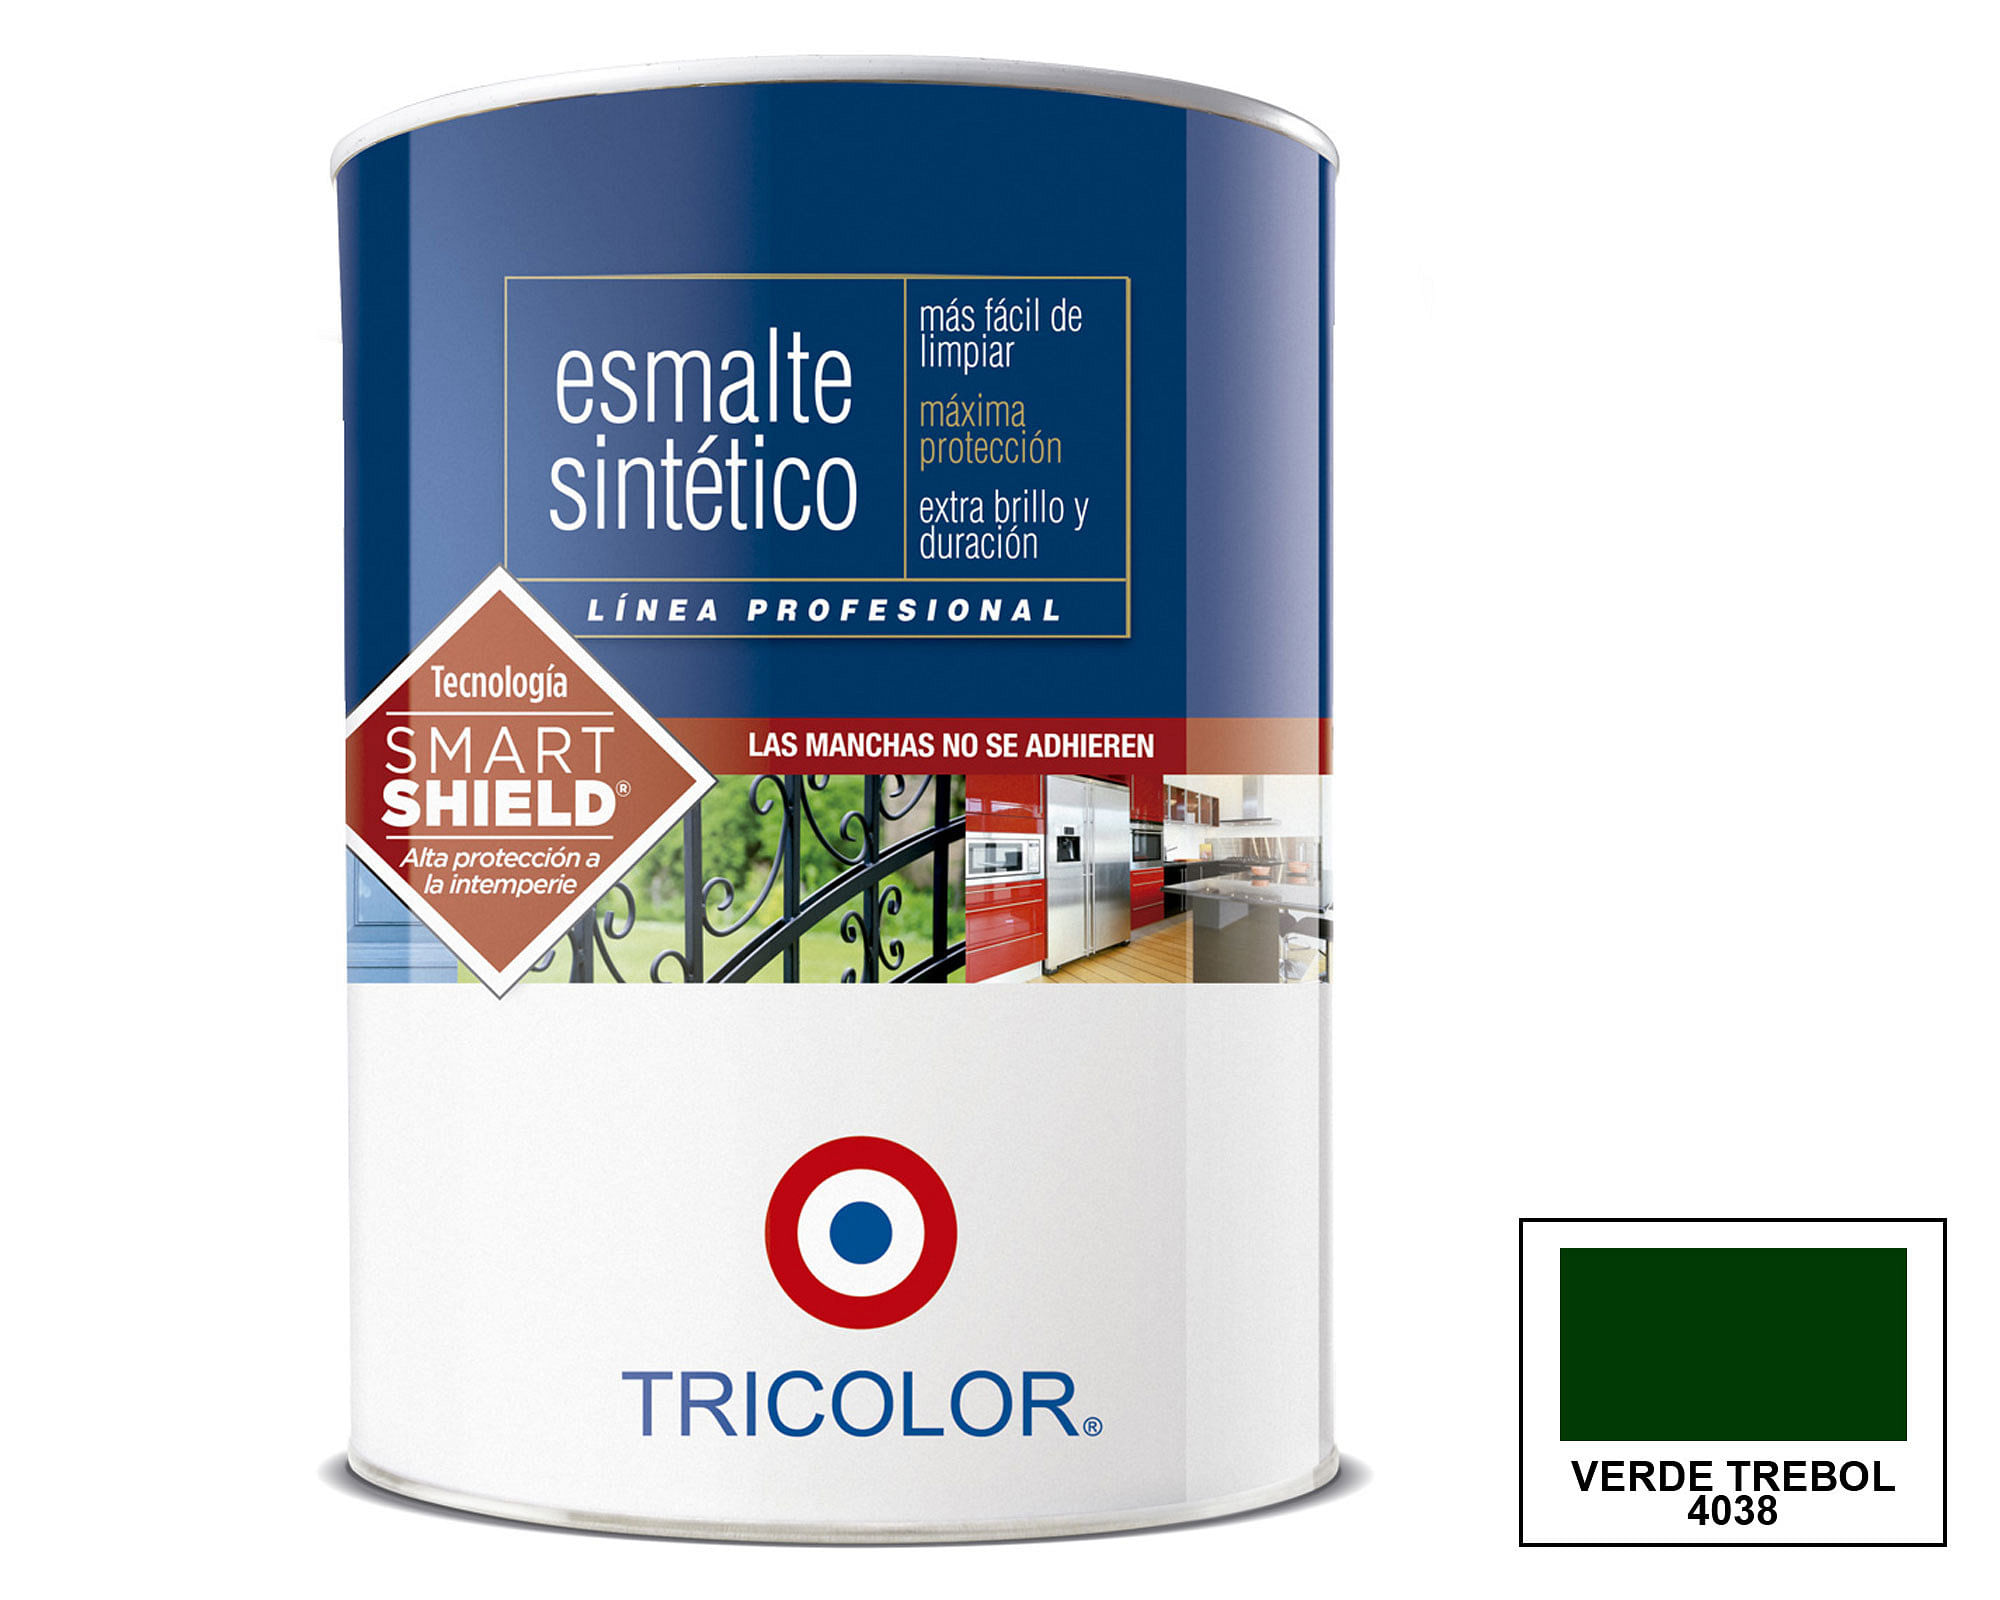 Esmalte sintético 1/4 galón Profesional verde trébol brillante Tricolor